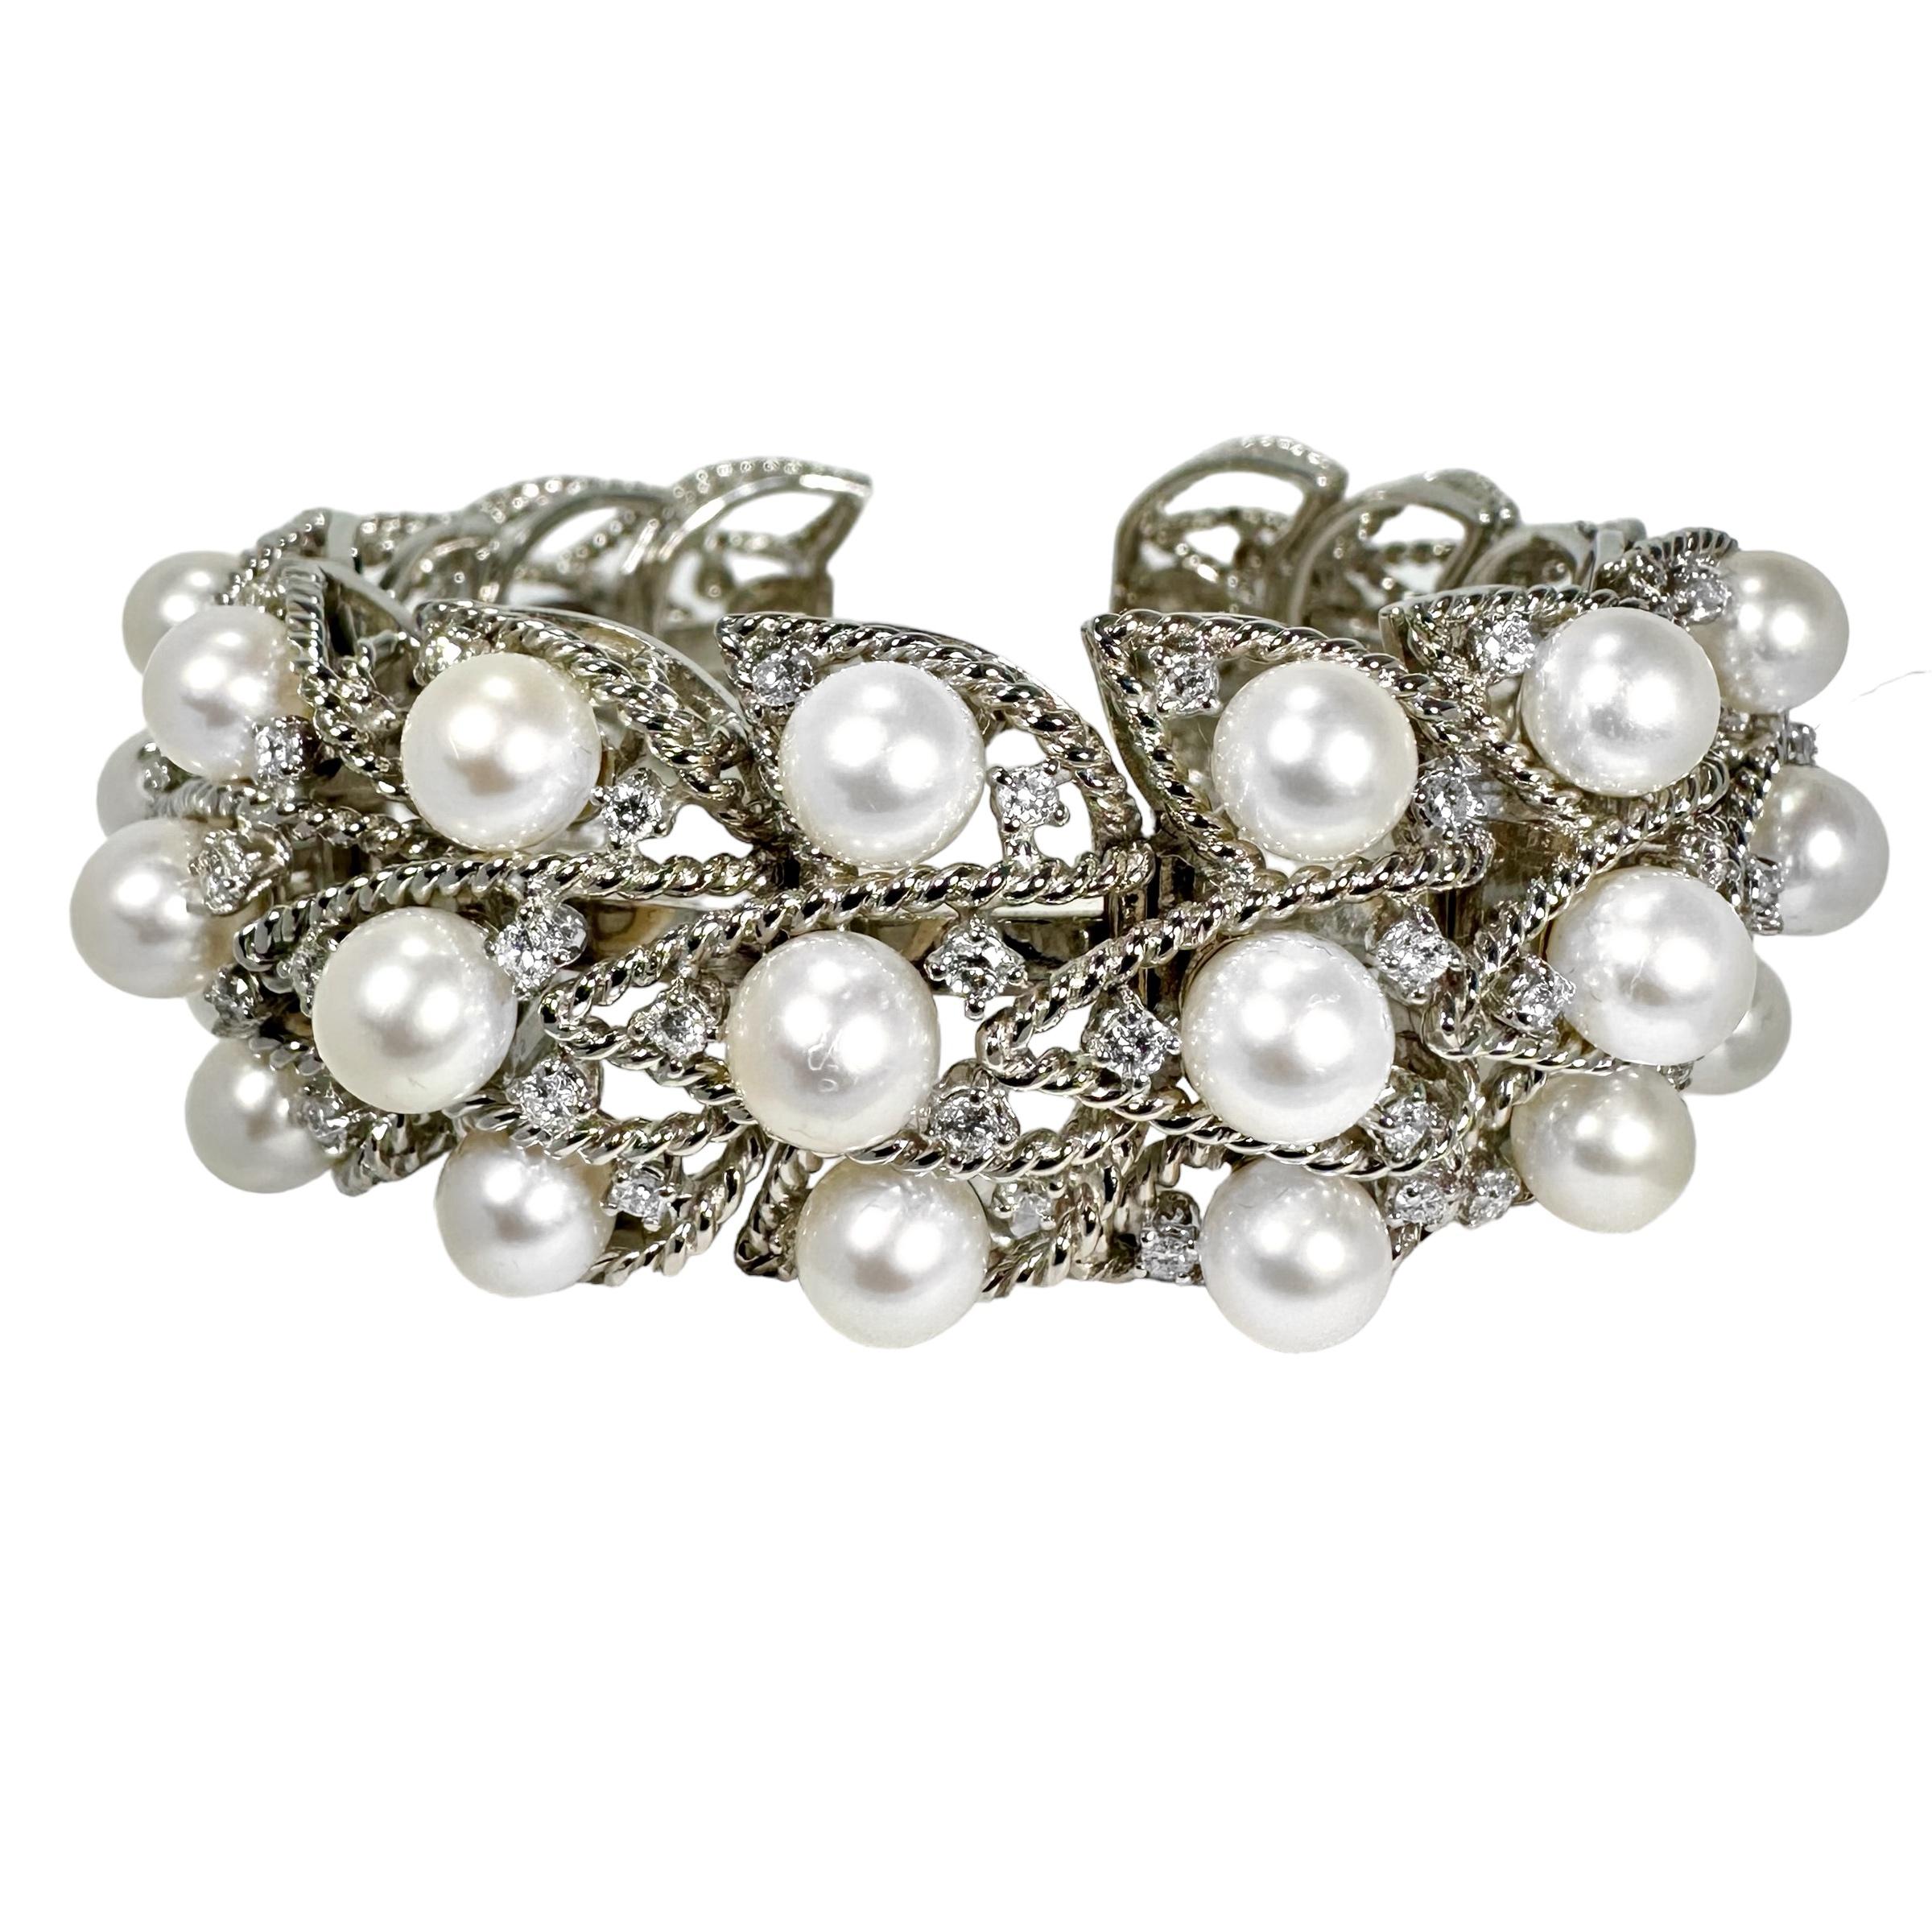 Diese schöne, flexible Manschette mit Perlen und Diamanten von Seaman Schepps ist ebenso elegant wie angenehm zu tragen. Die Natur der flexiblen Glieder und das offene Rückendesign ermöglichen die Anpassung an eine Reihe von Handgelenksgrößen, von